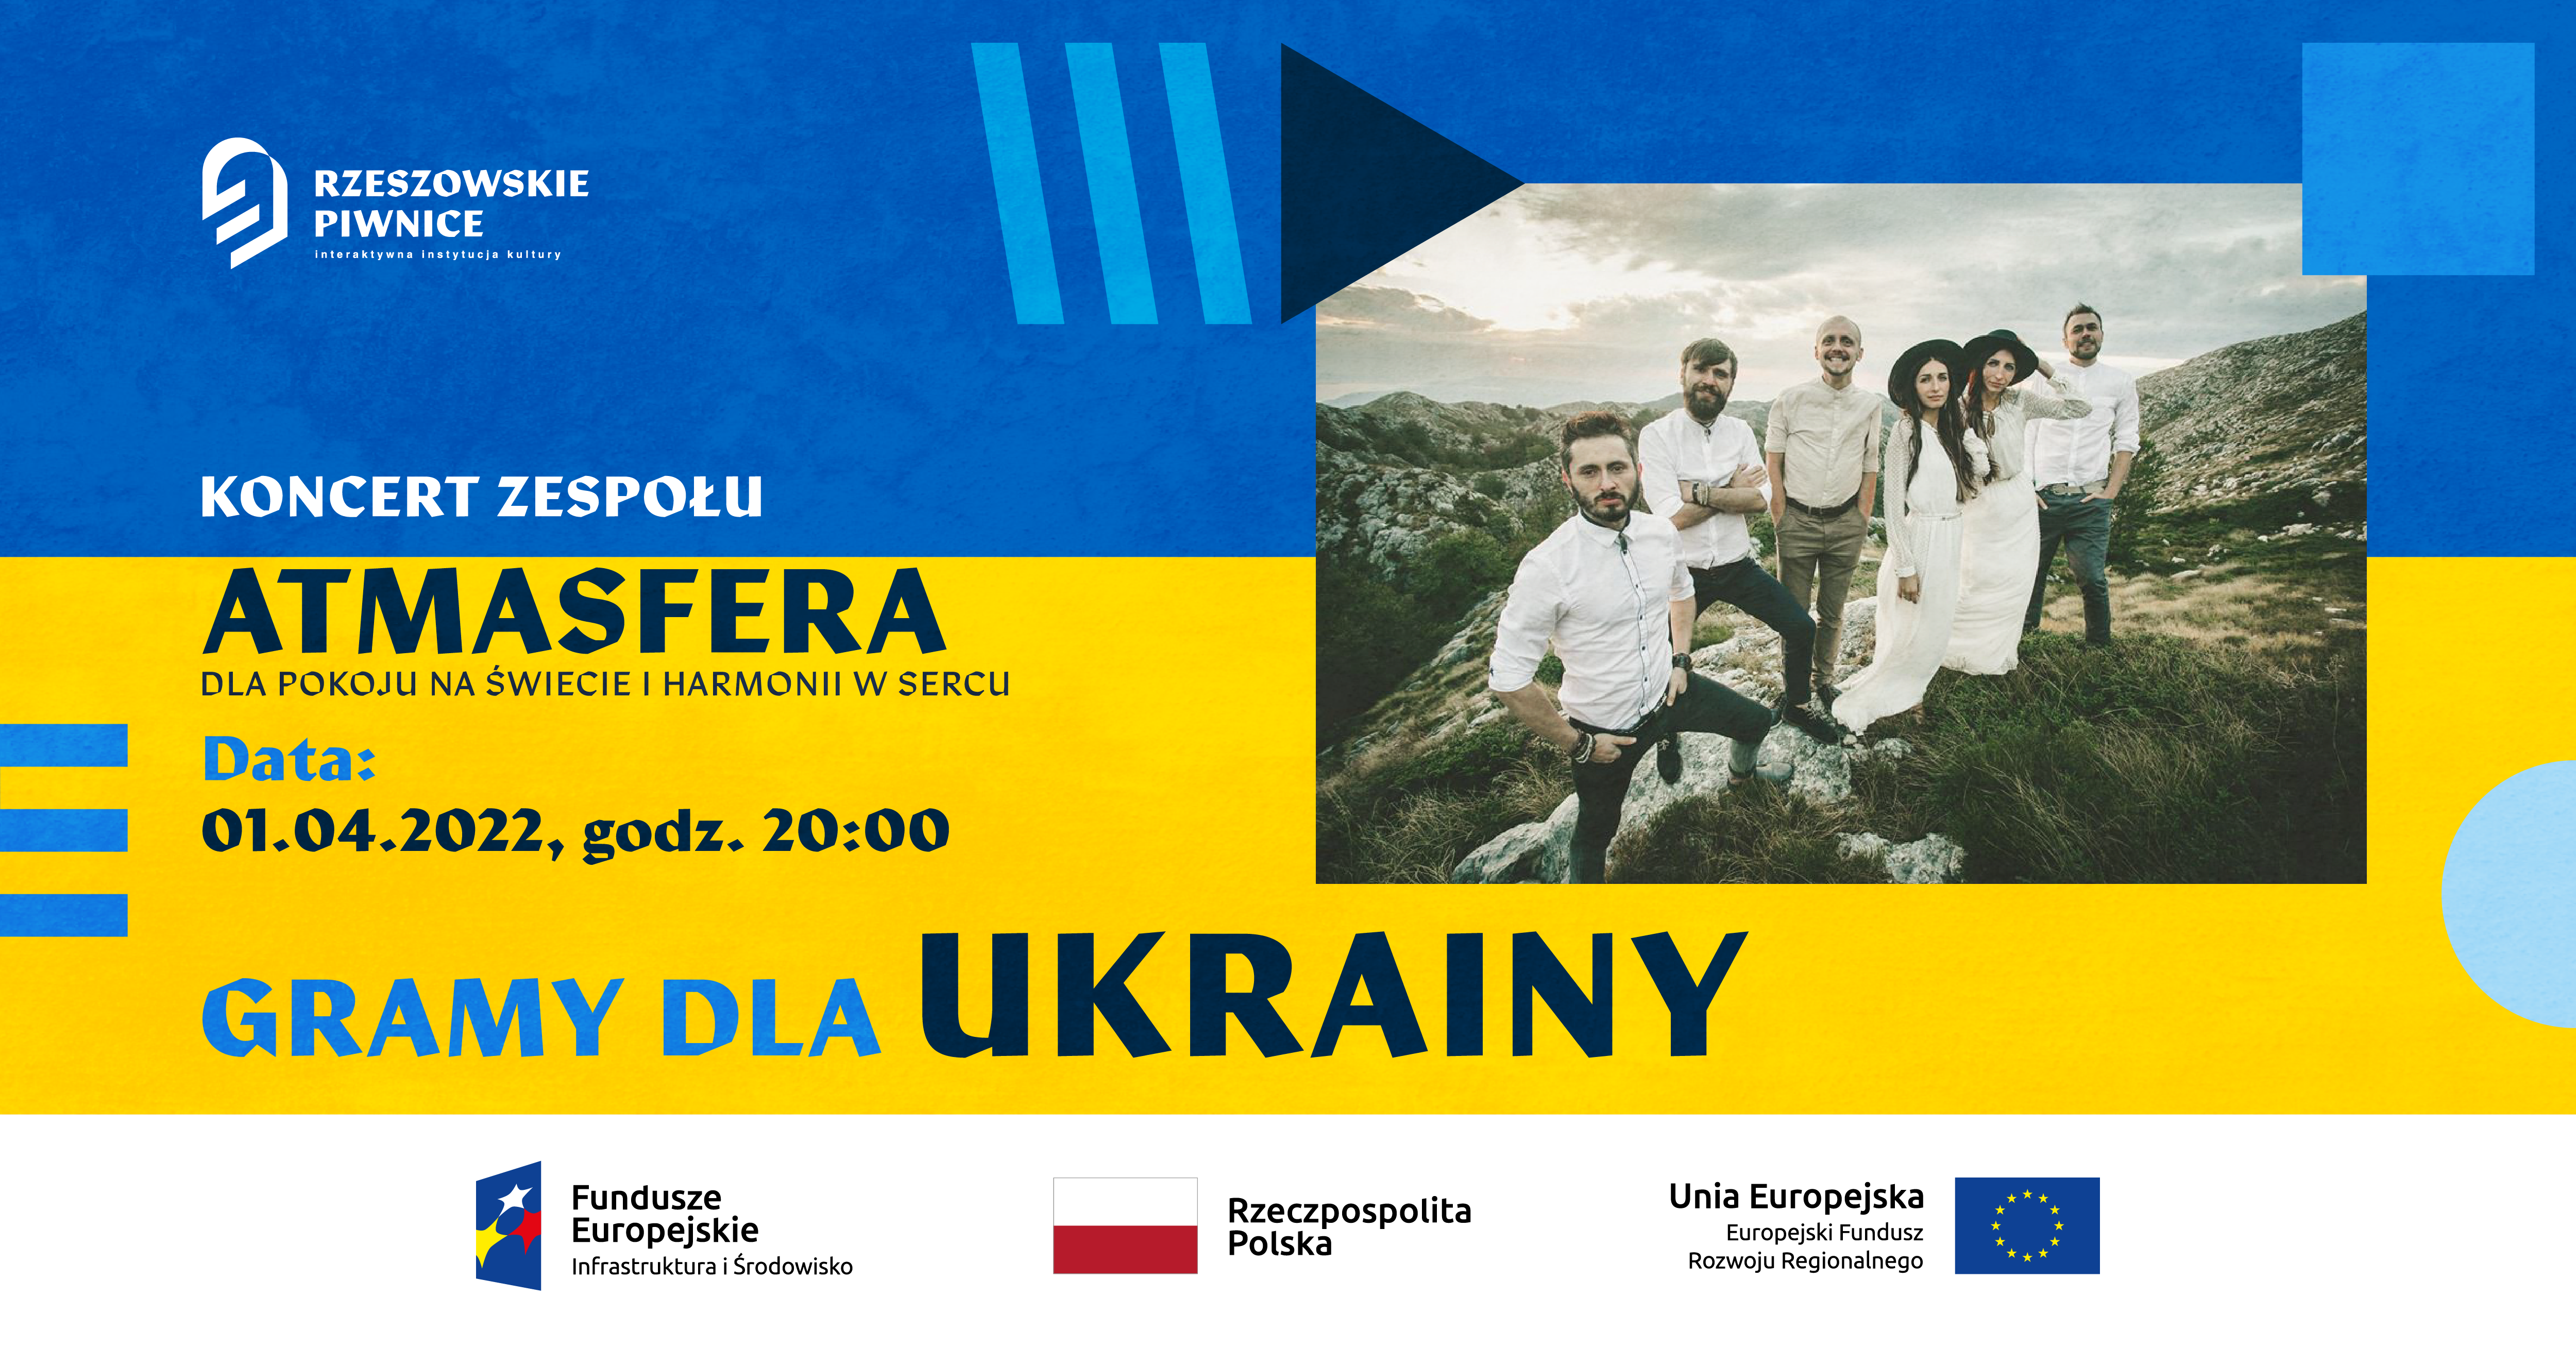 Gramy dla Ukrainy: Charytatywny koncert zespołu Atmasfera 